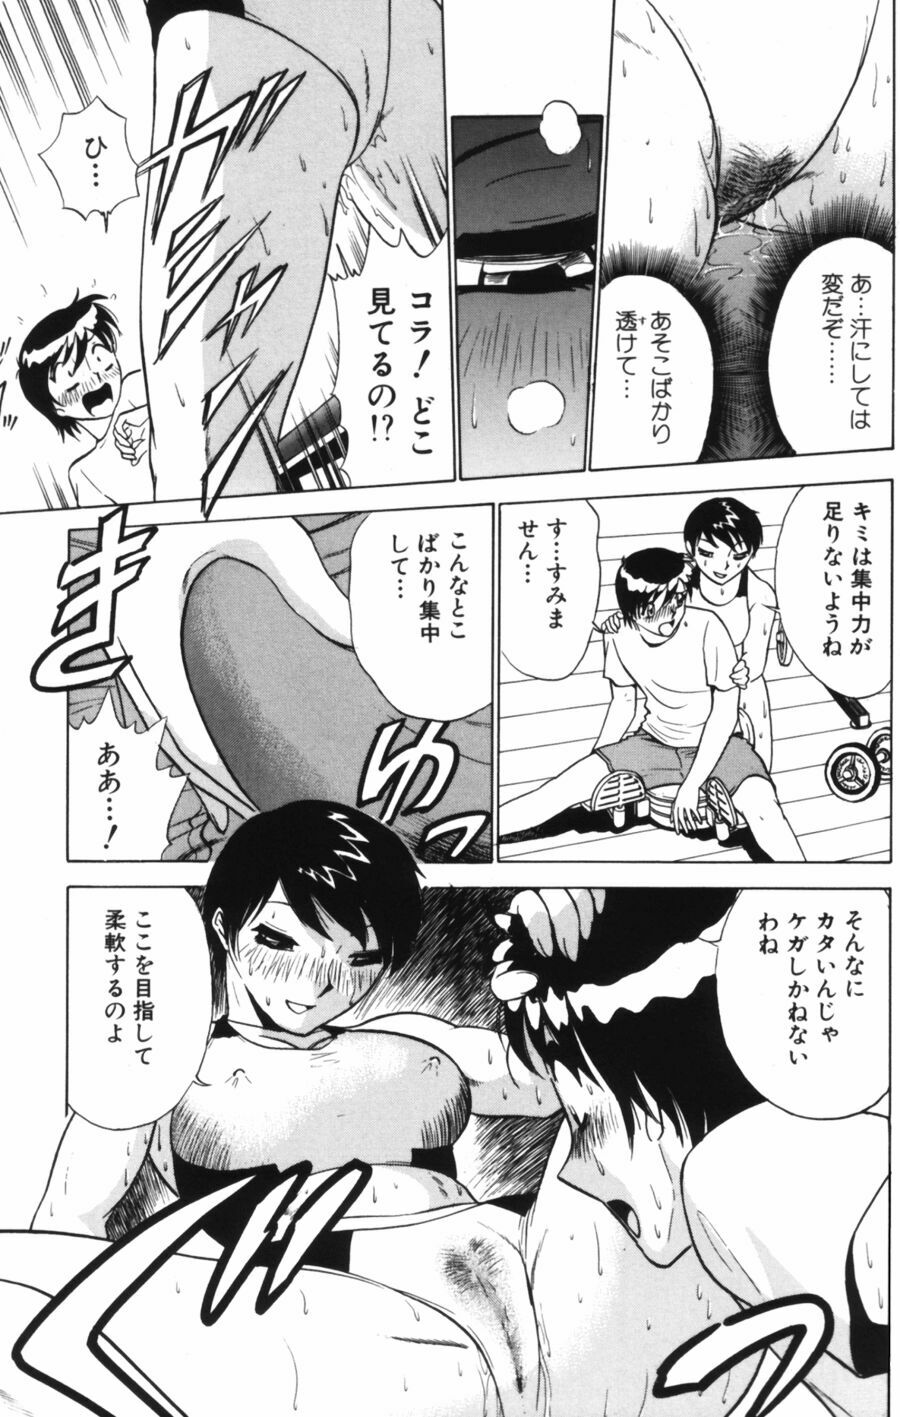 [Minami Tomoko, Kyon] Ai wa Kagi no Kazu dake... Part. 1 page 43 full